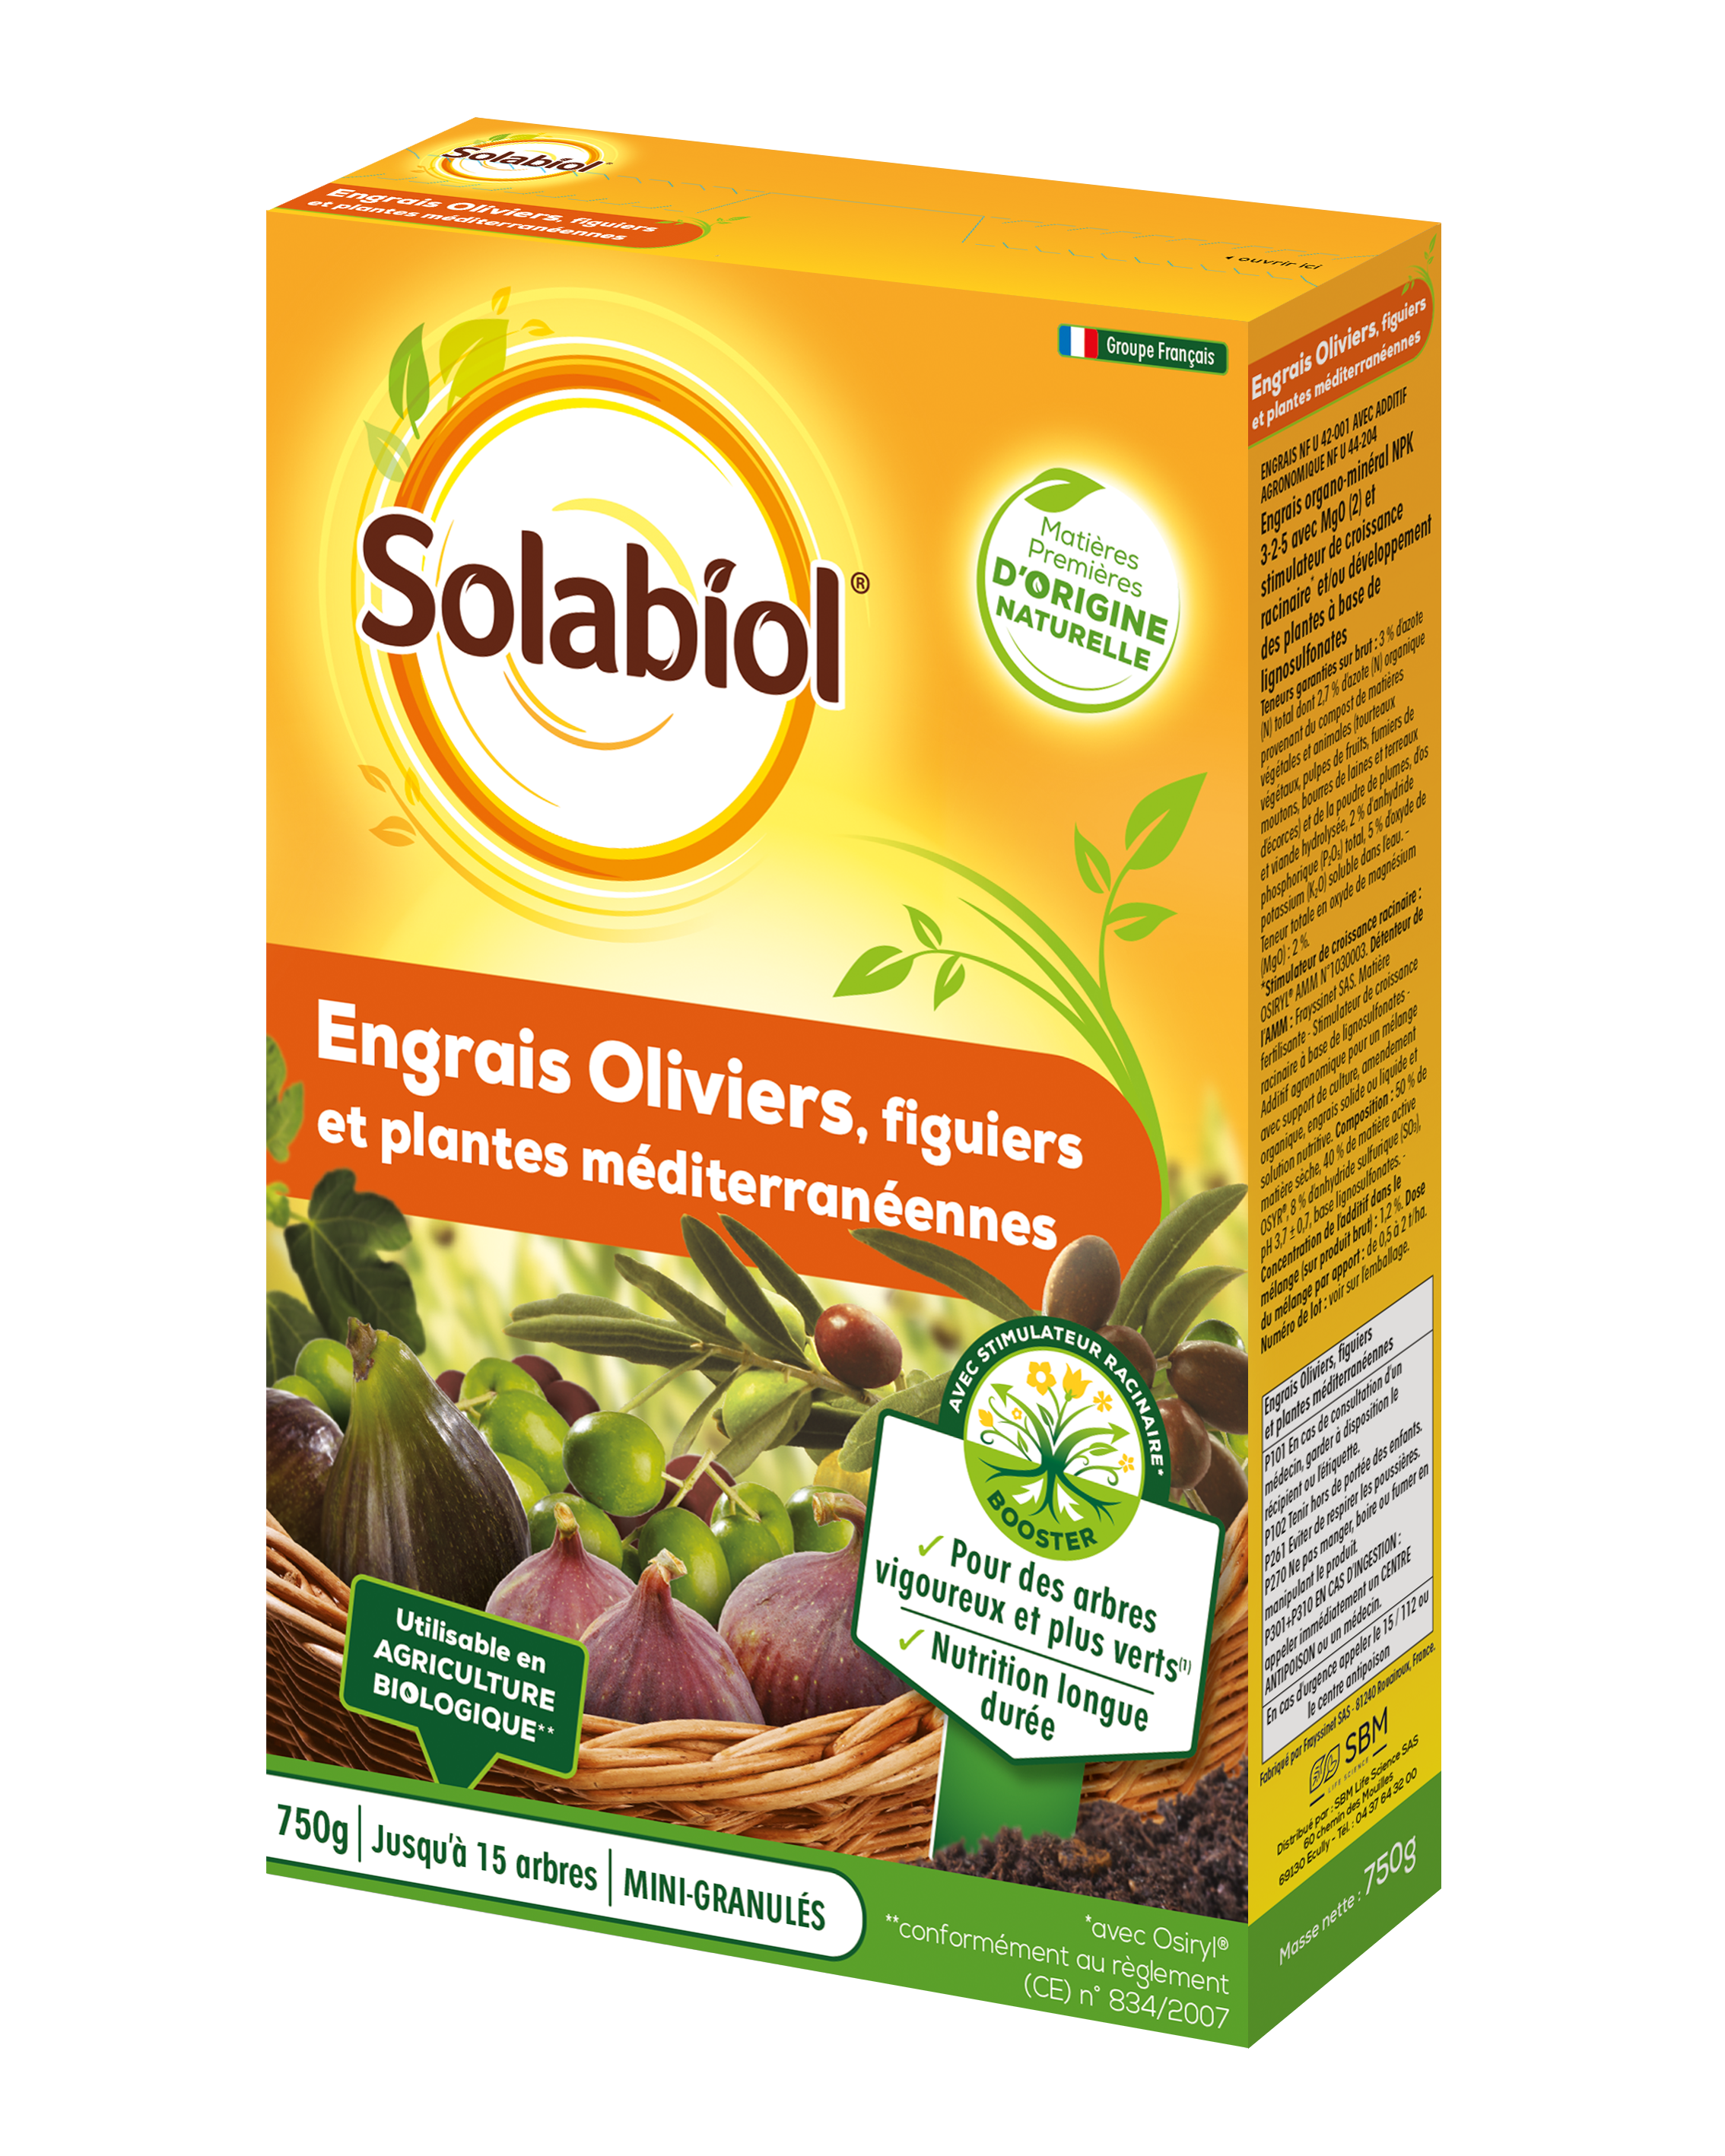 Solivy750 | engrais oliviers et figuiers | 750g | utilisable en agricu